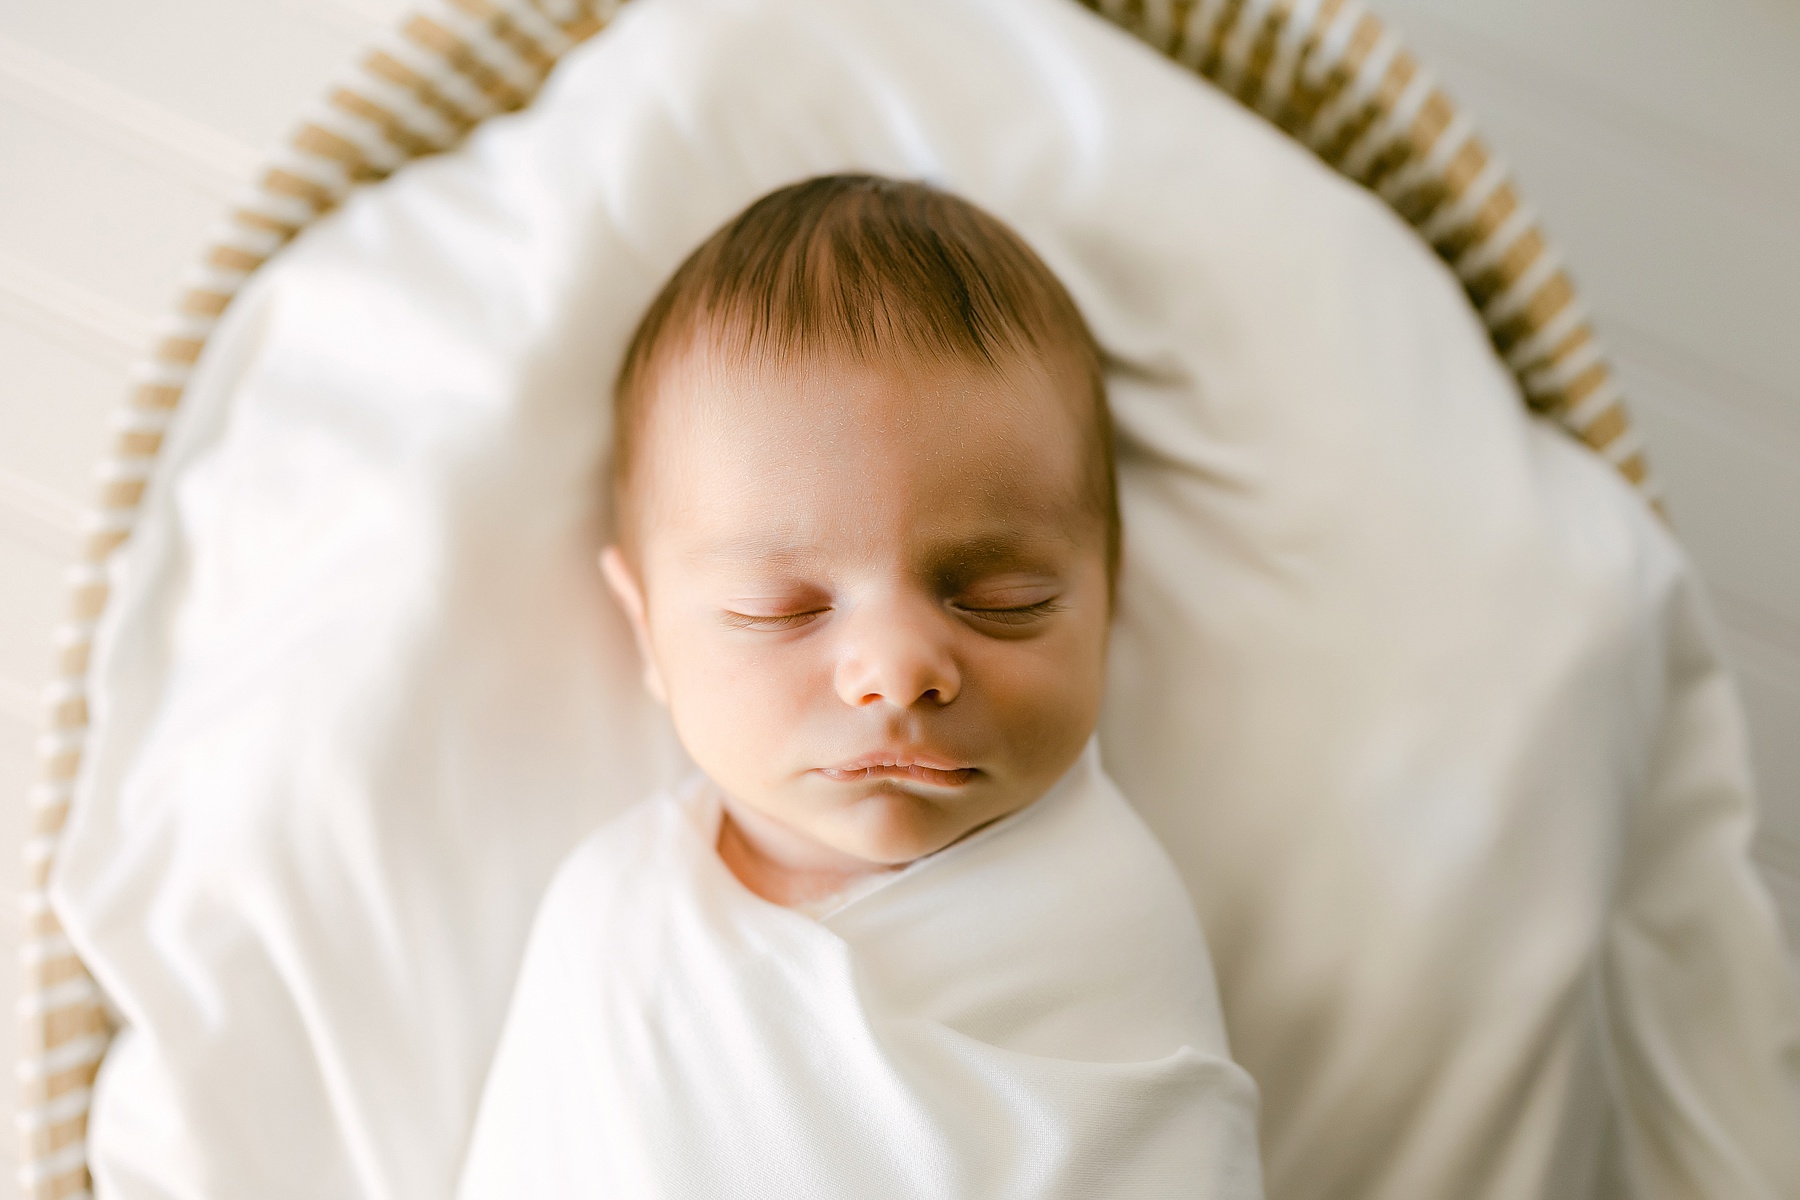 newborn baby boy sleeping in wicker basket wrapped in a white blanket